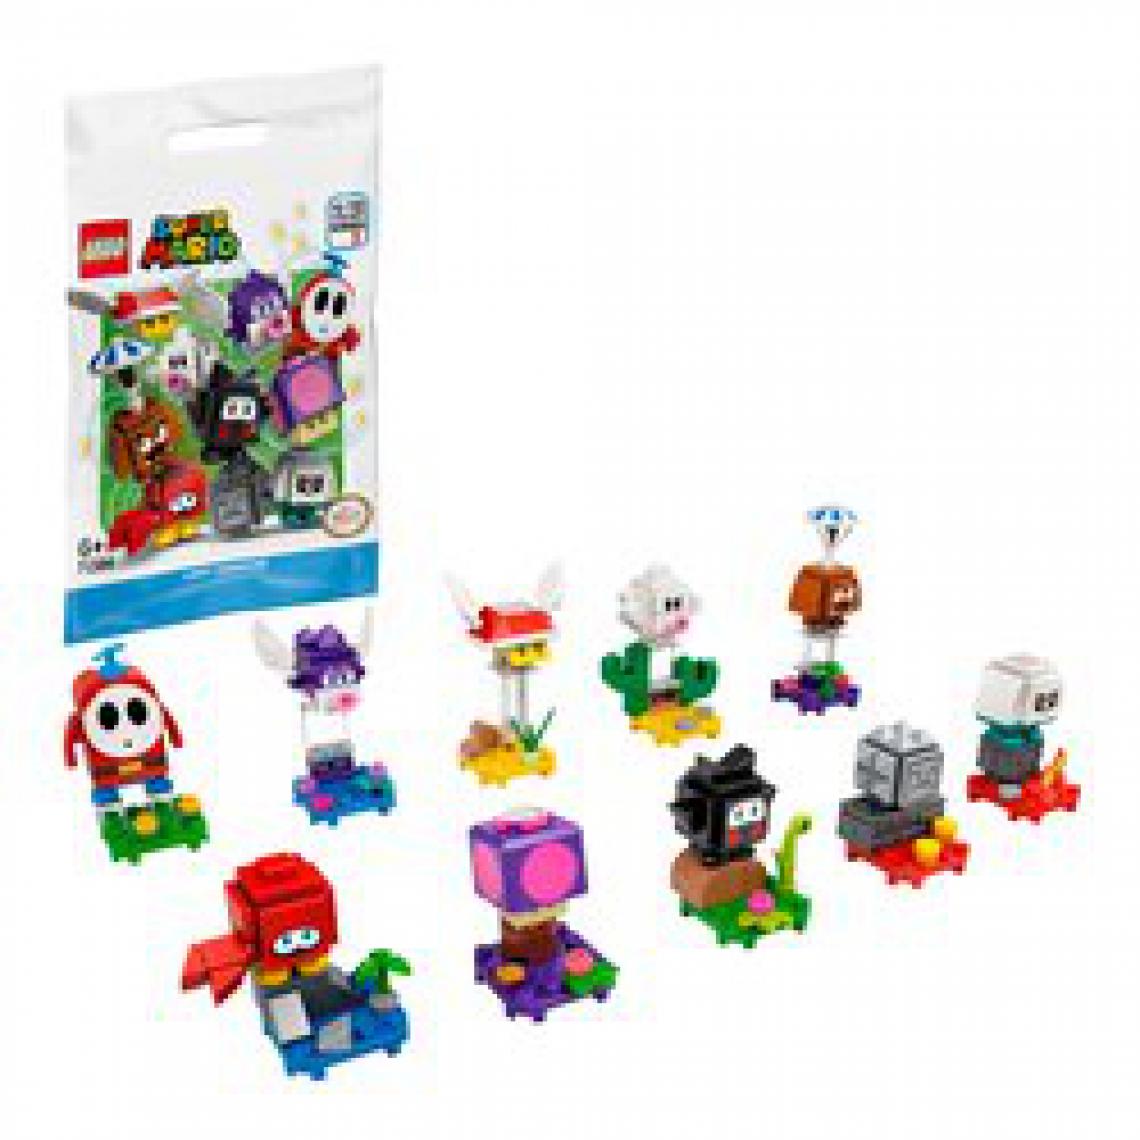 Lego - LEGO Super Mario™71386 Pack surprise de personnage, Série 2, jeu intéractif a collectionner pour enfants (modele choisi au hasard) - Briques et blocs